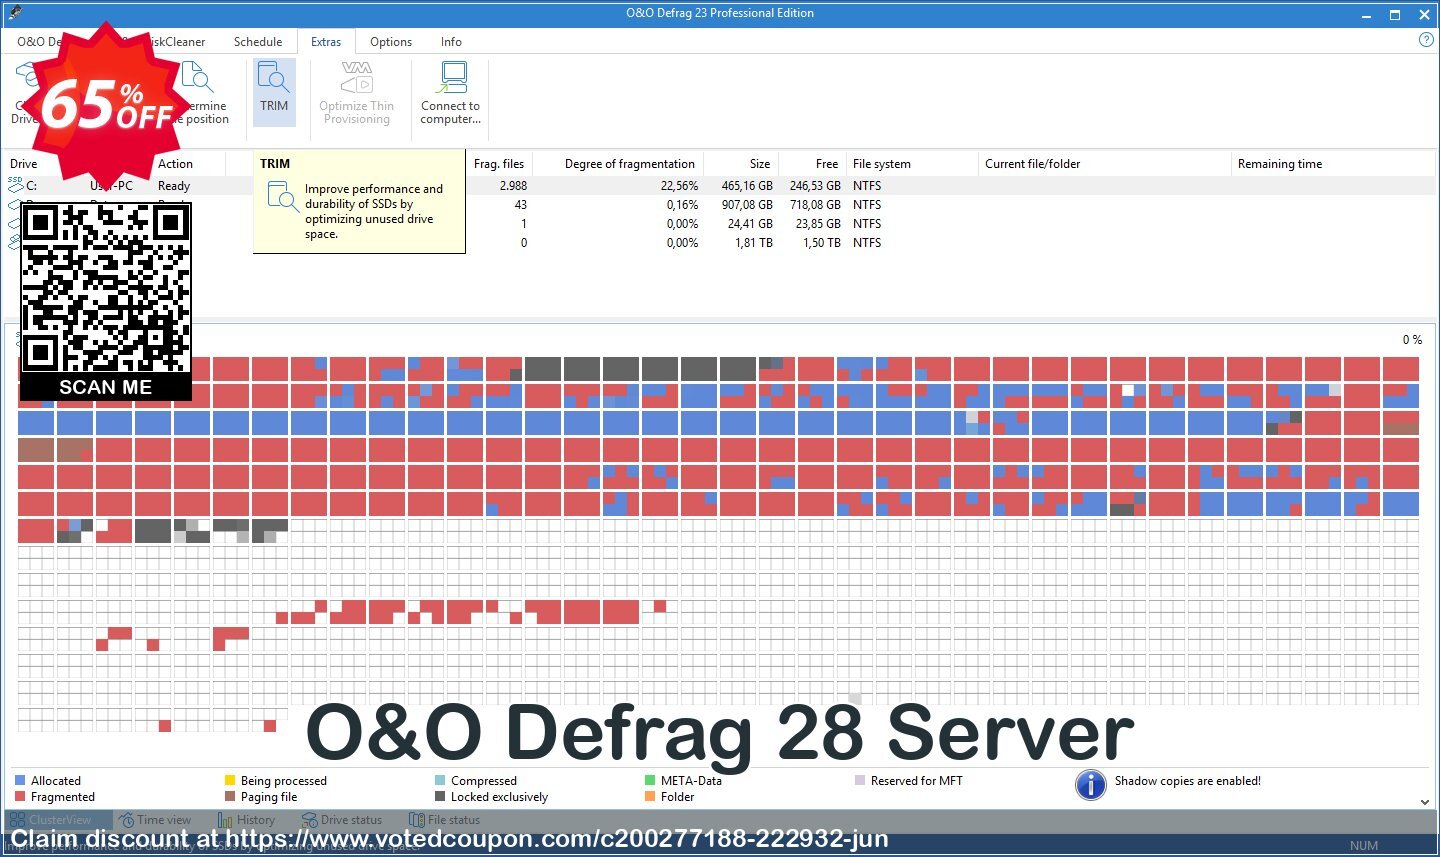 O&O Defrag 28 Server Coupon, discount 65% OFF O&O Defrag 28 Server, verified. Promotion: Big promo code of O&O Defrag 28 Server, tested & approved